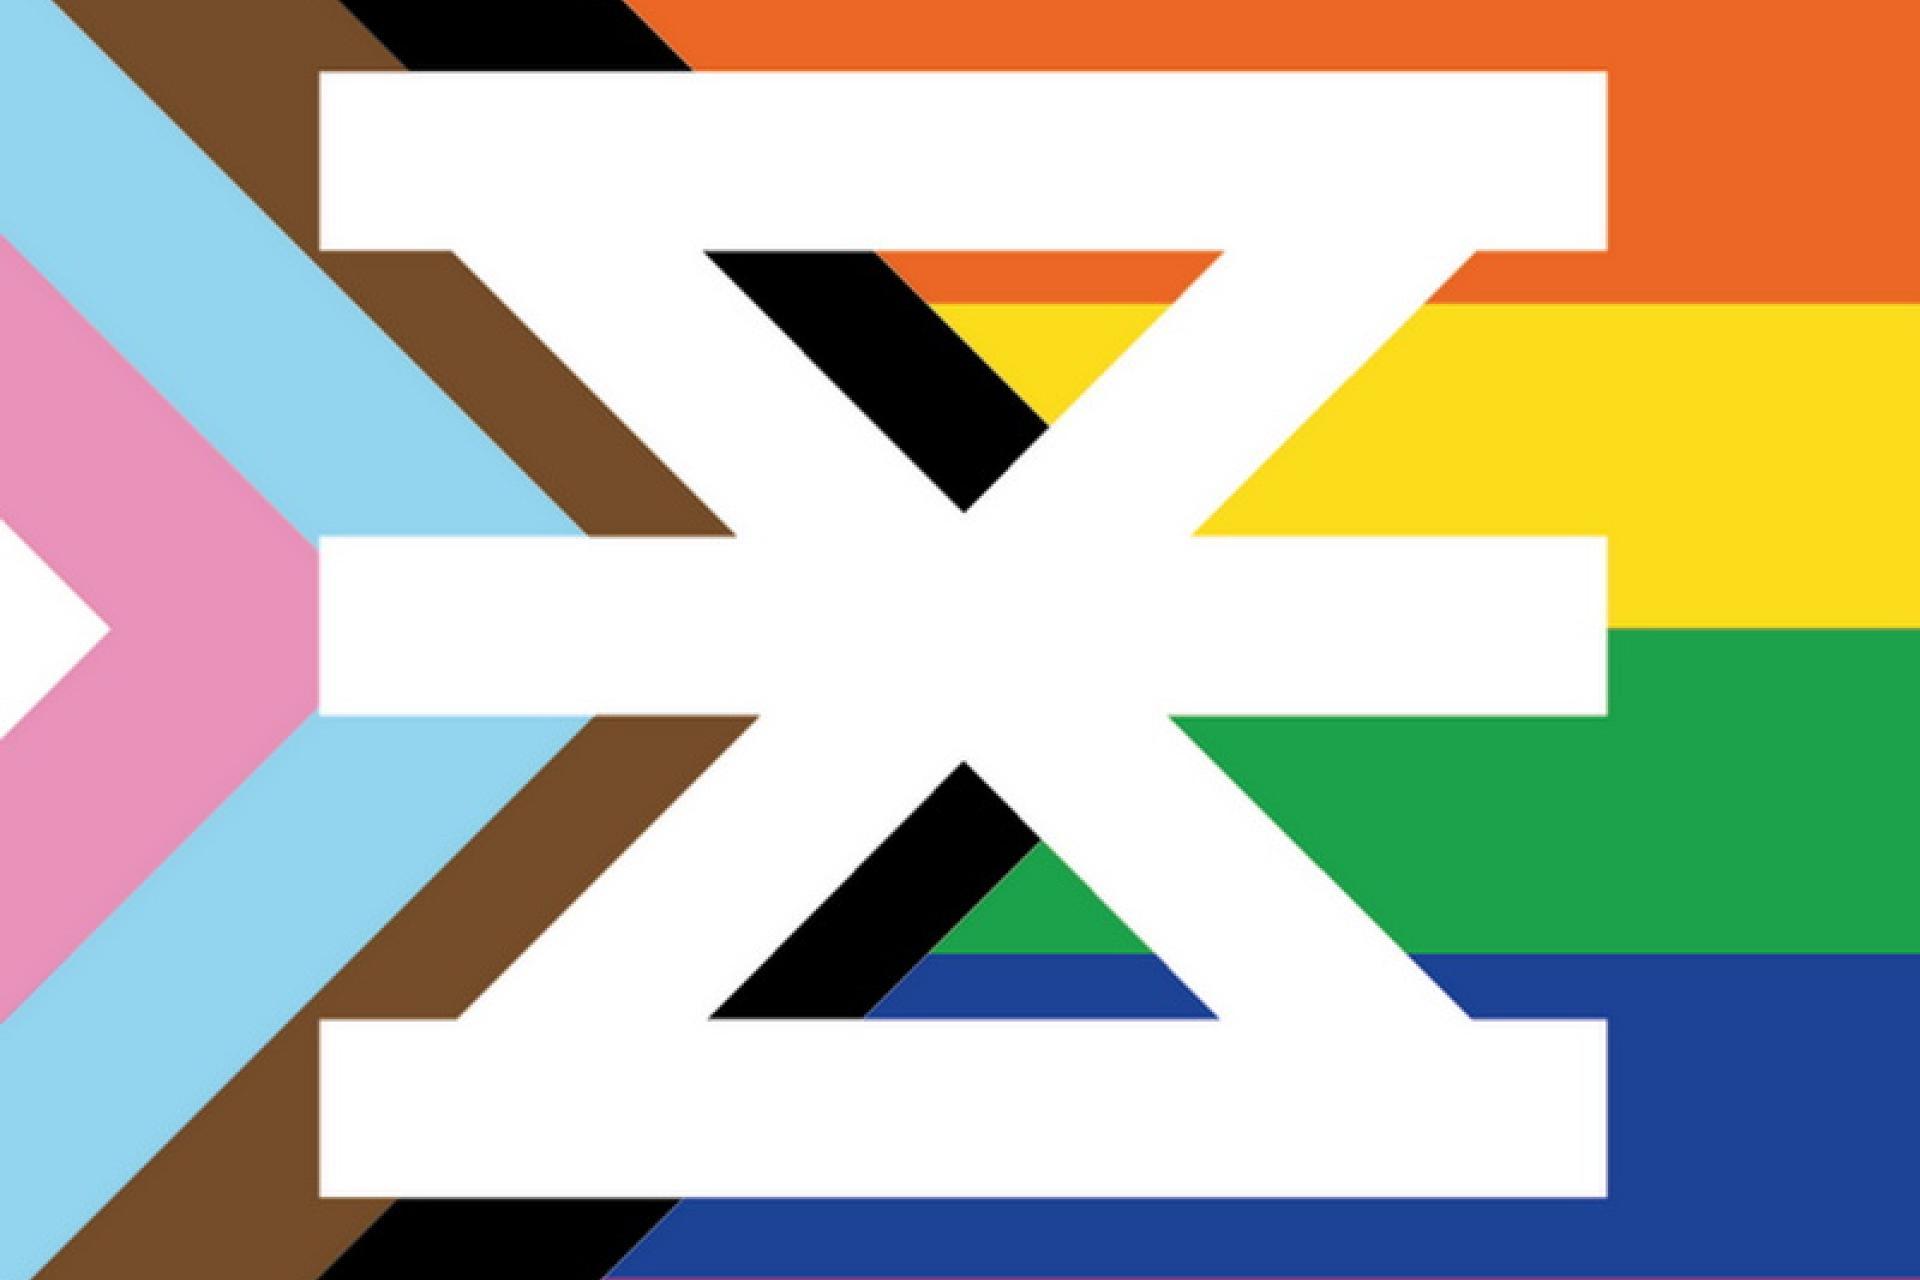 Regenboogvlag als achtergrond van het Enschede beeldmerk